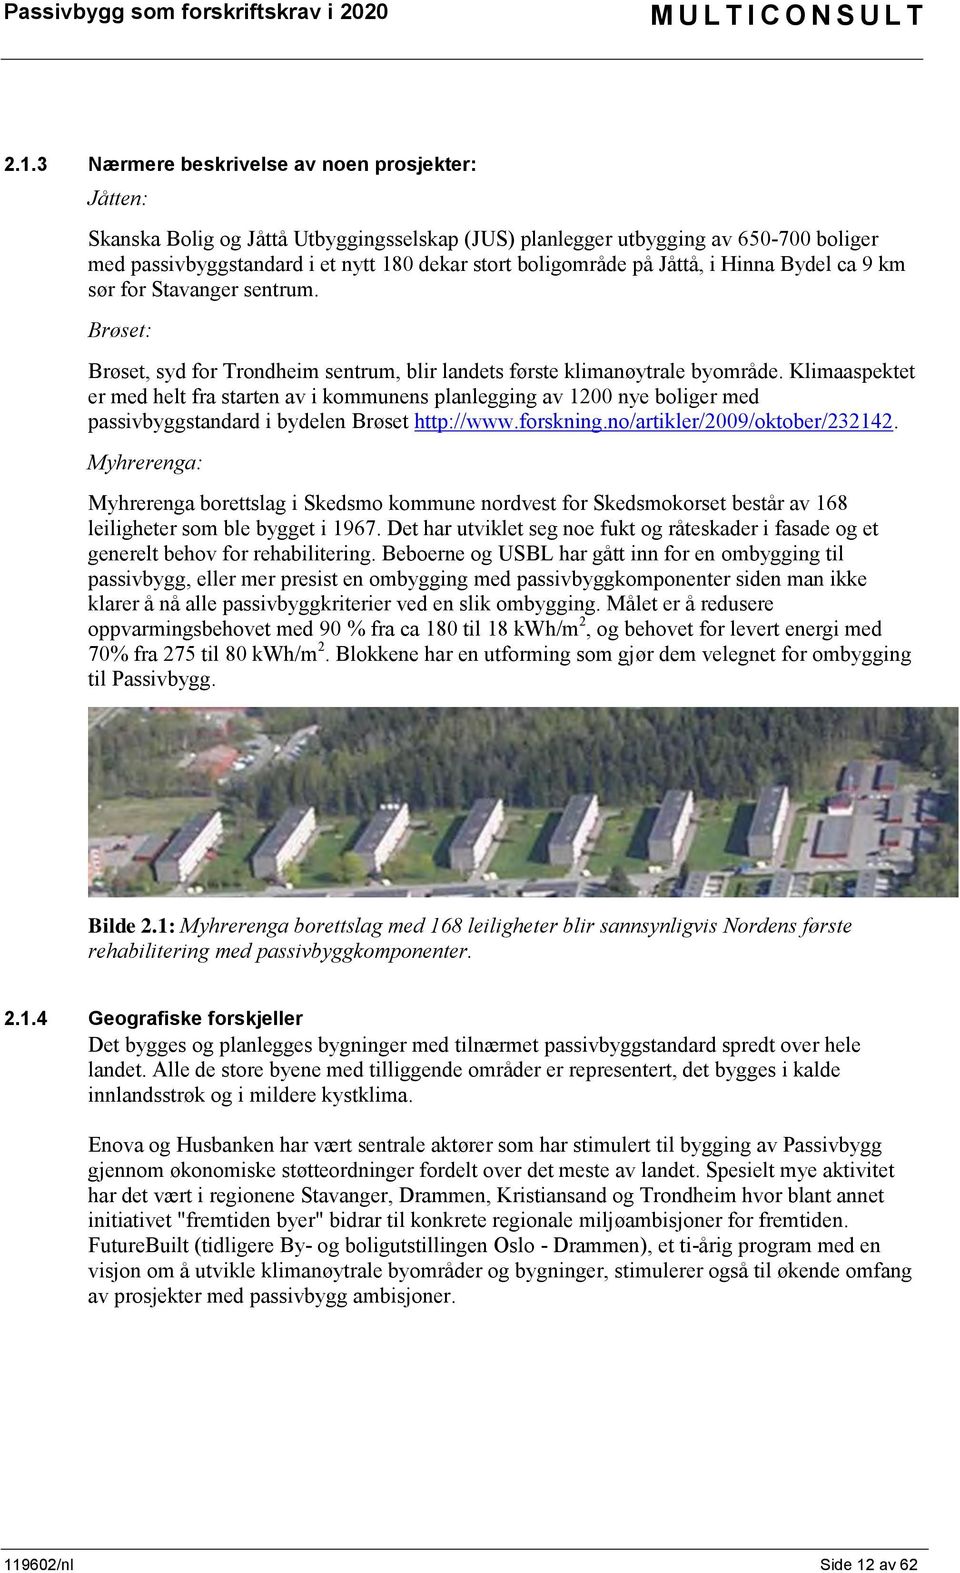 Klimaaspektet er med helt fra starten av i kommunens planlegging av 1200 nye boliger med passivbyggstandard i bydelen Brøset http://www.forskning.no/artikler/2009/oktober/232142.